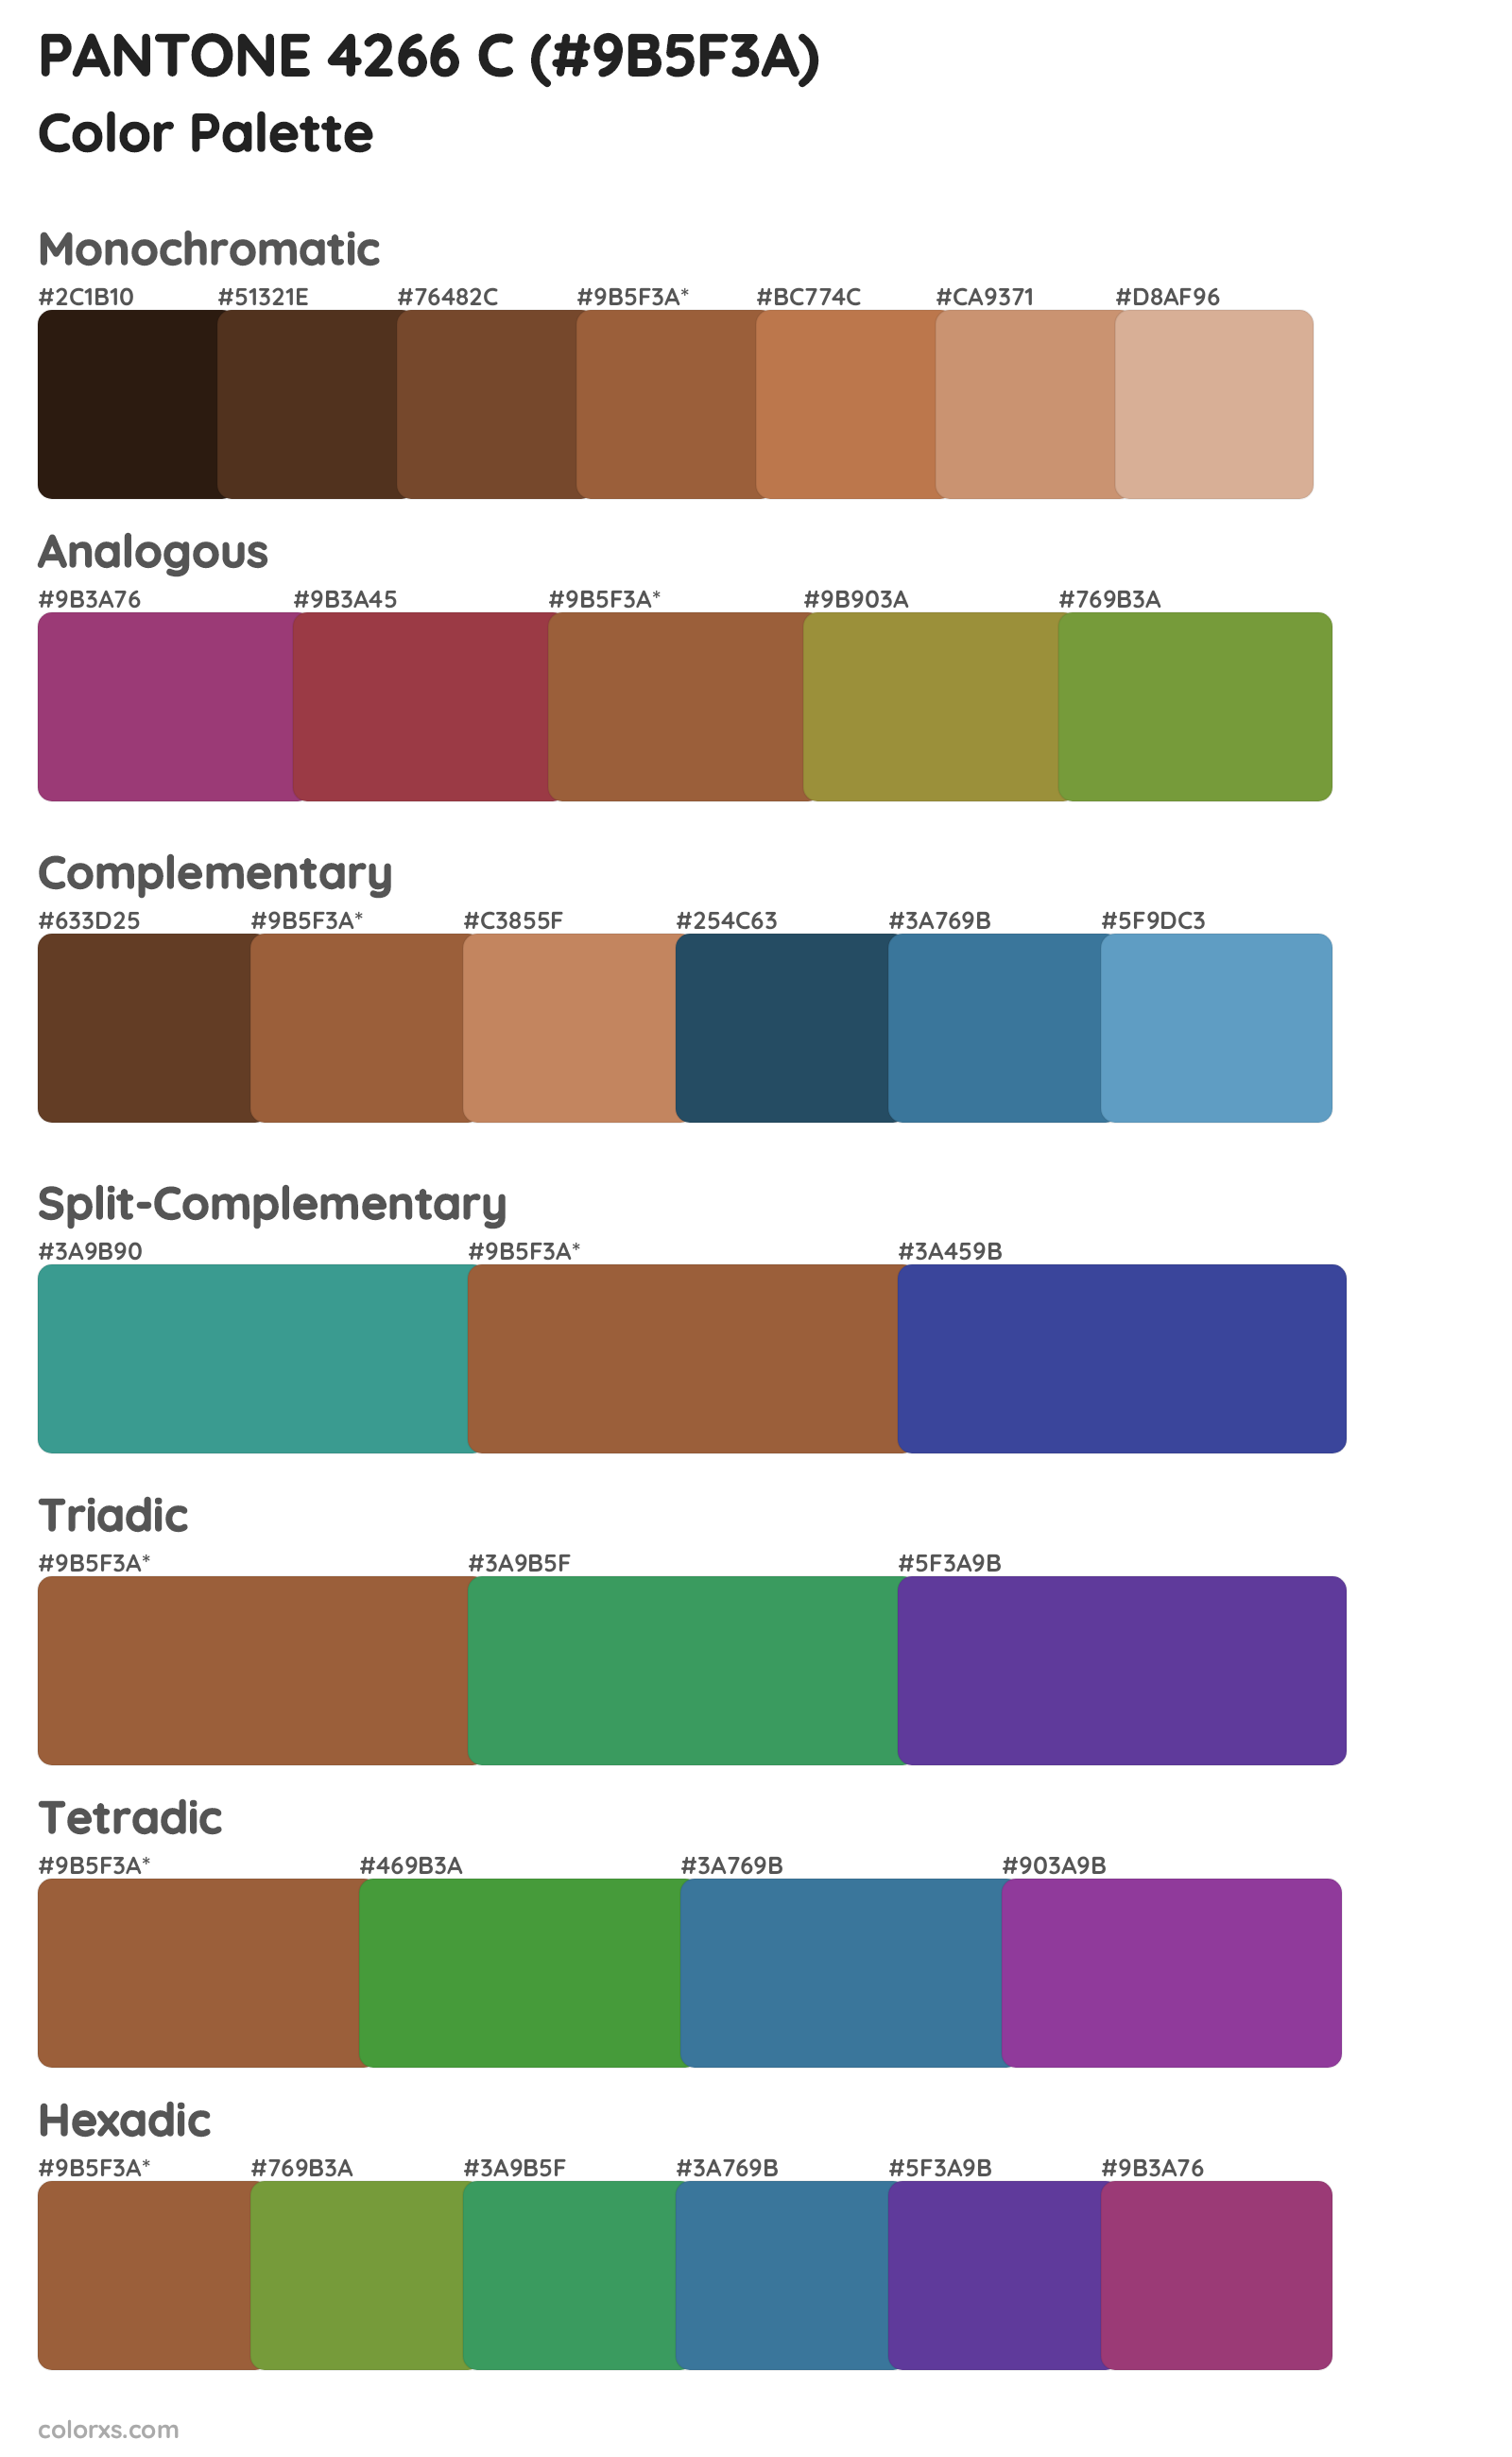 PANTONE 4266 C Color Scheme Palettes